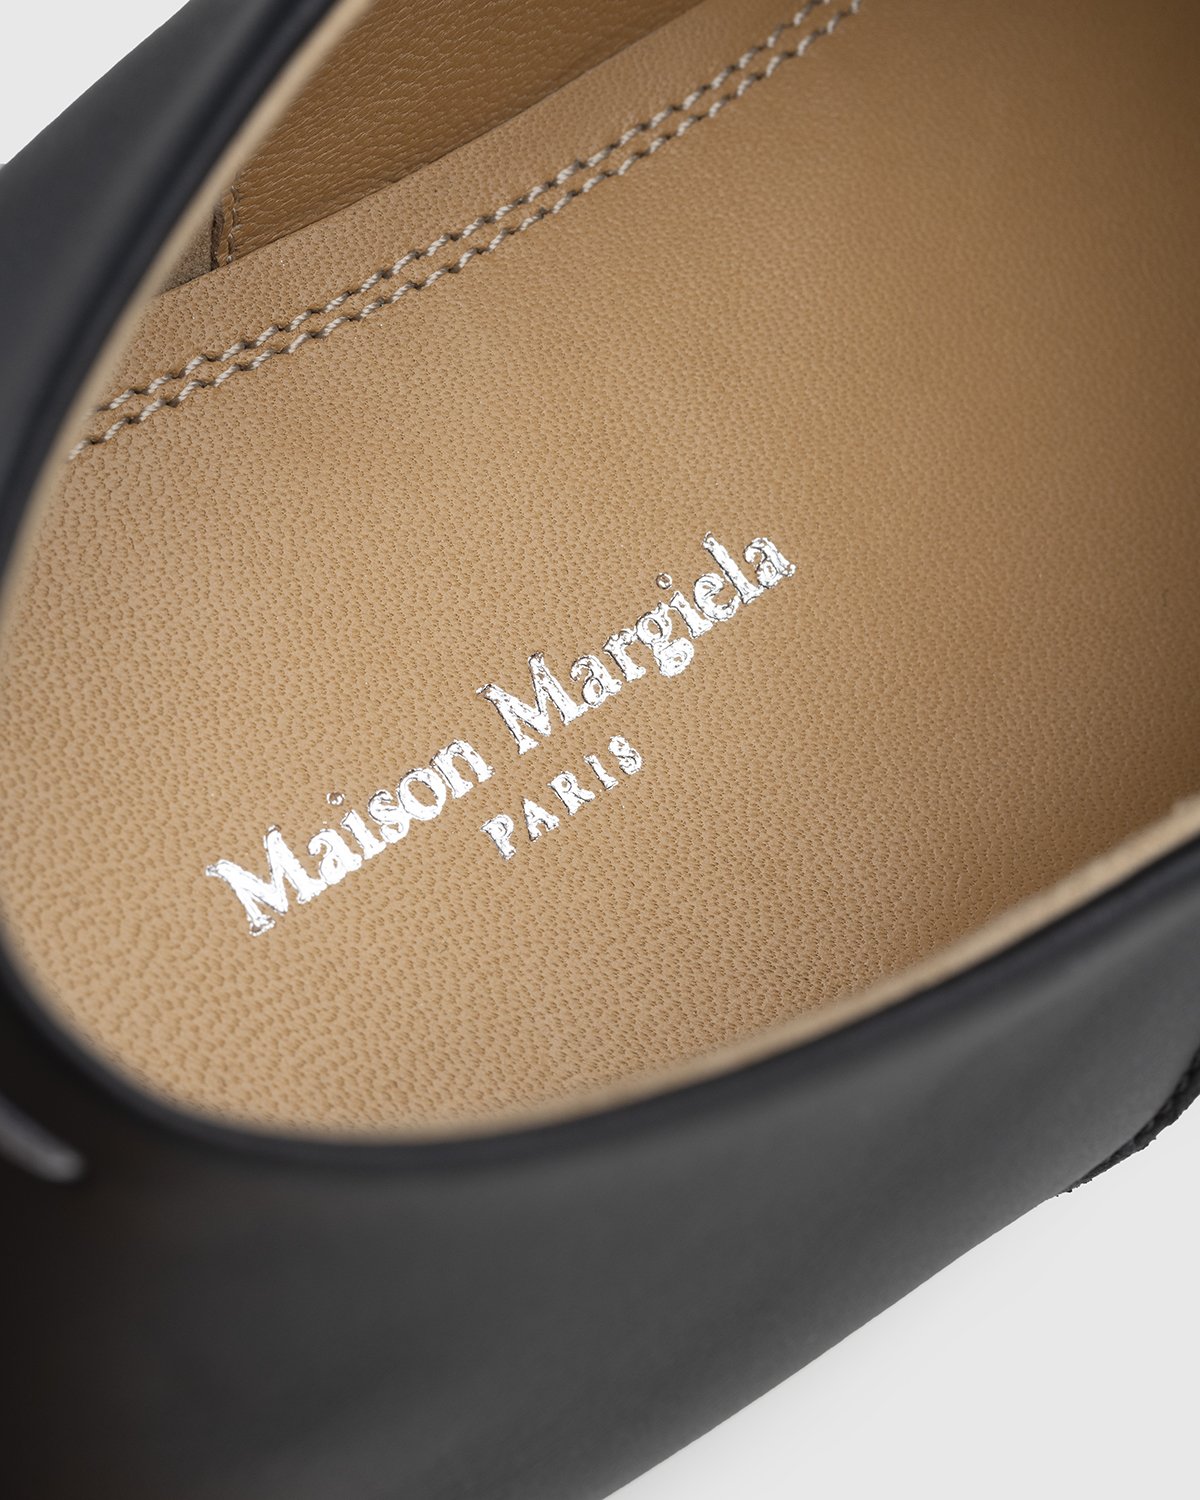 Maison Margiela - Tabi Slip On Black - Footwear - Black - Image 9